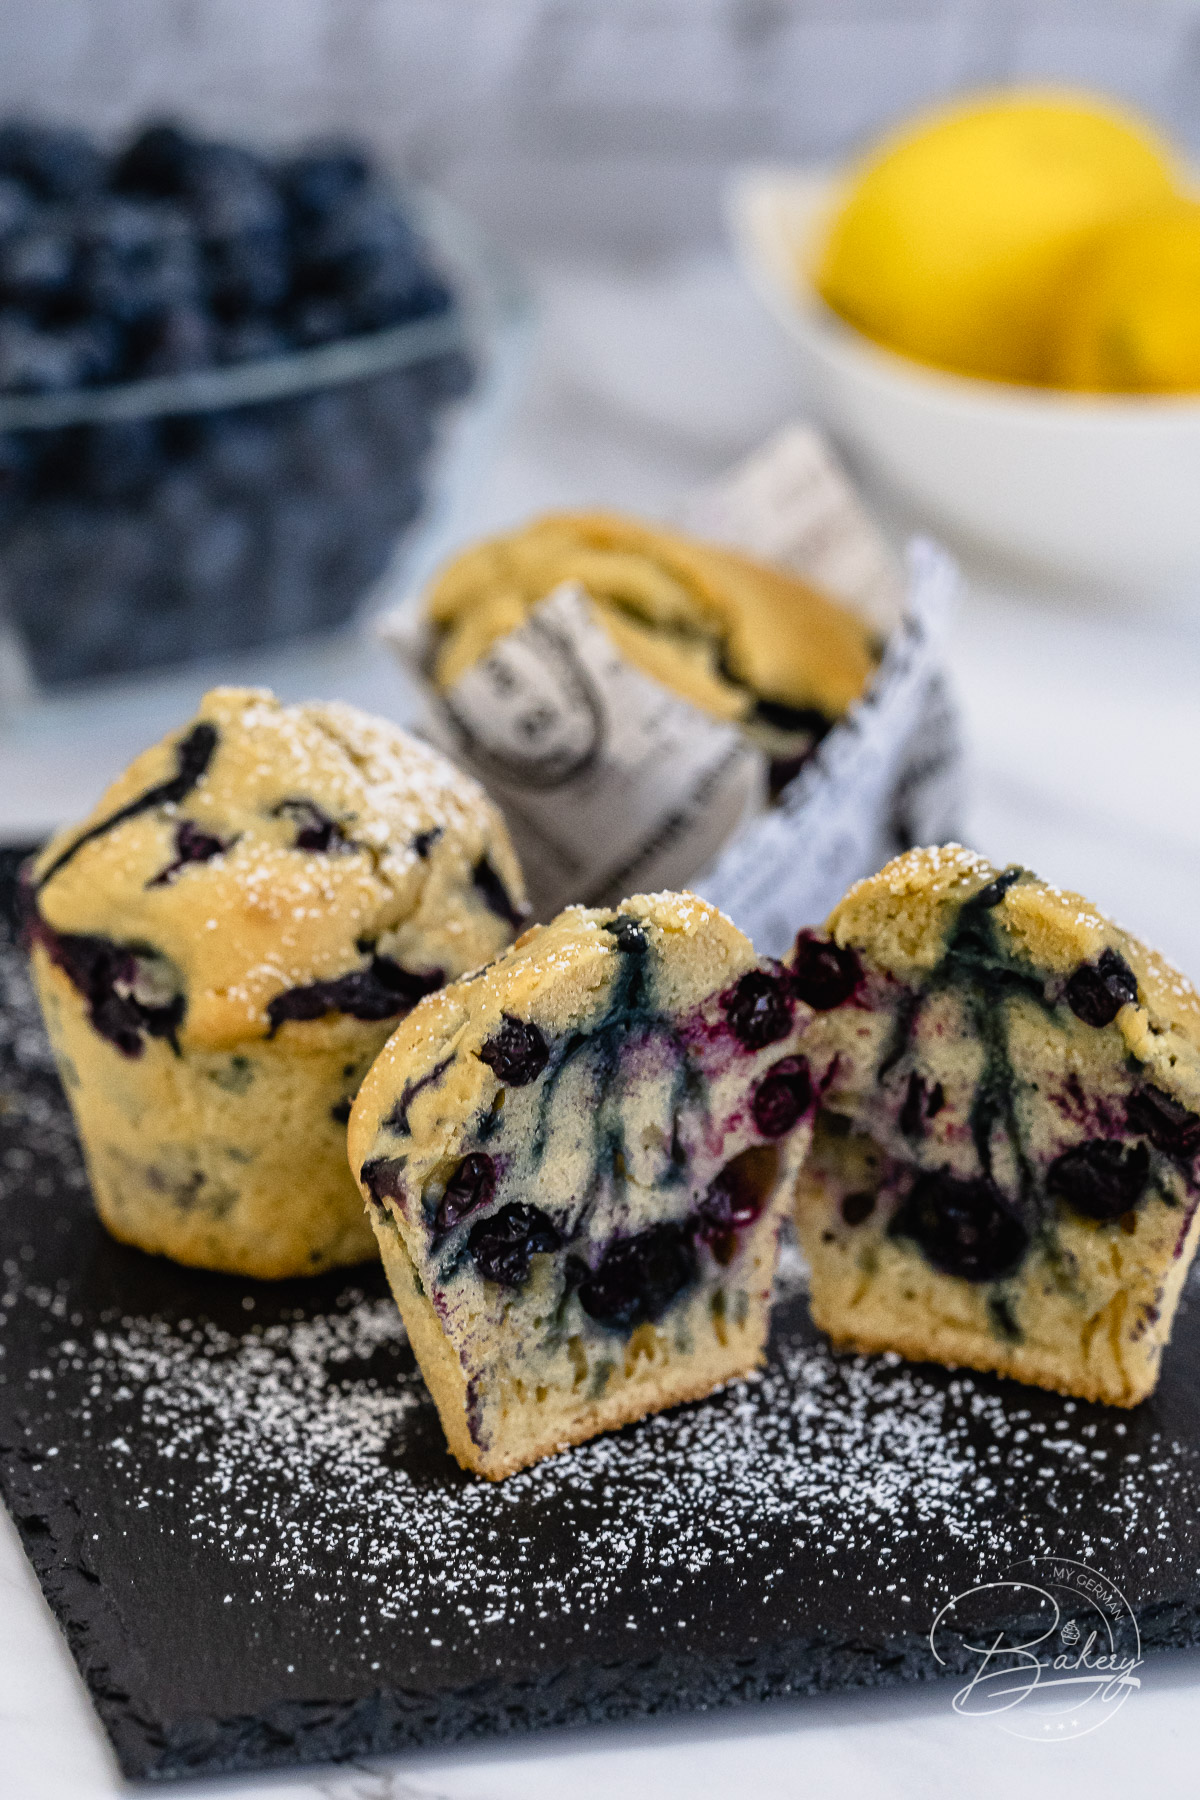 Blaubeer Muffins Rezept - bestes Muffin Rezept als Basis - saftige, lockere, fluffige, leckere Muffins mit Blaubeeren backen. Schnell, einfach und lecker sind diese Blaubeer Muffins, die dem Vorbild bei Starbucks sehr ähnlich sind. Buttermilch, Rohrzucker und Mehl